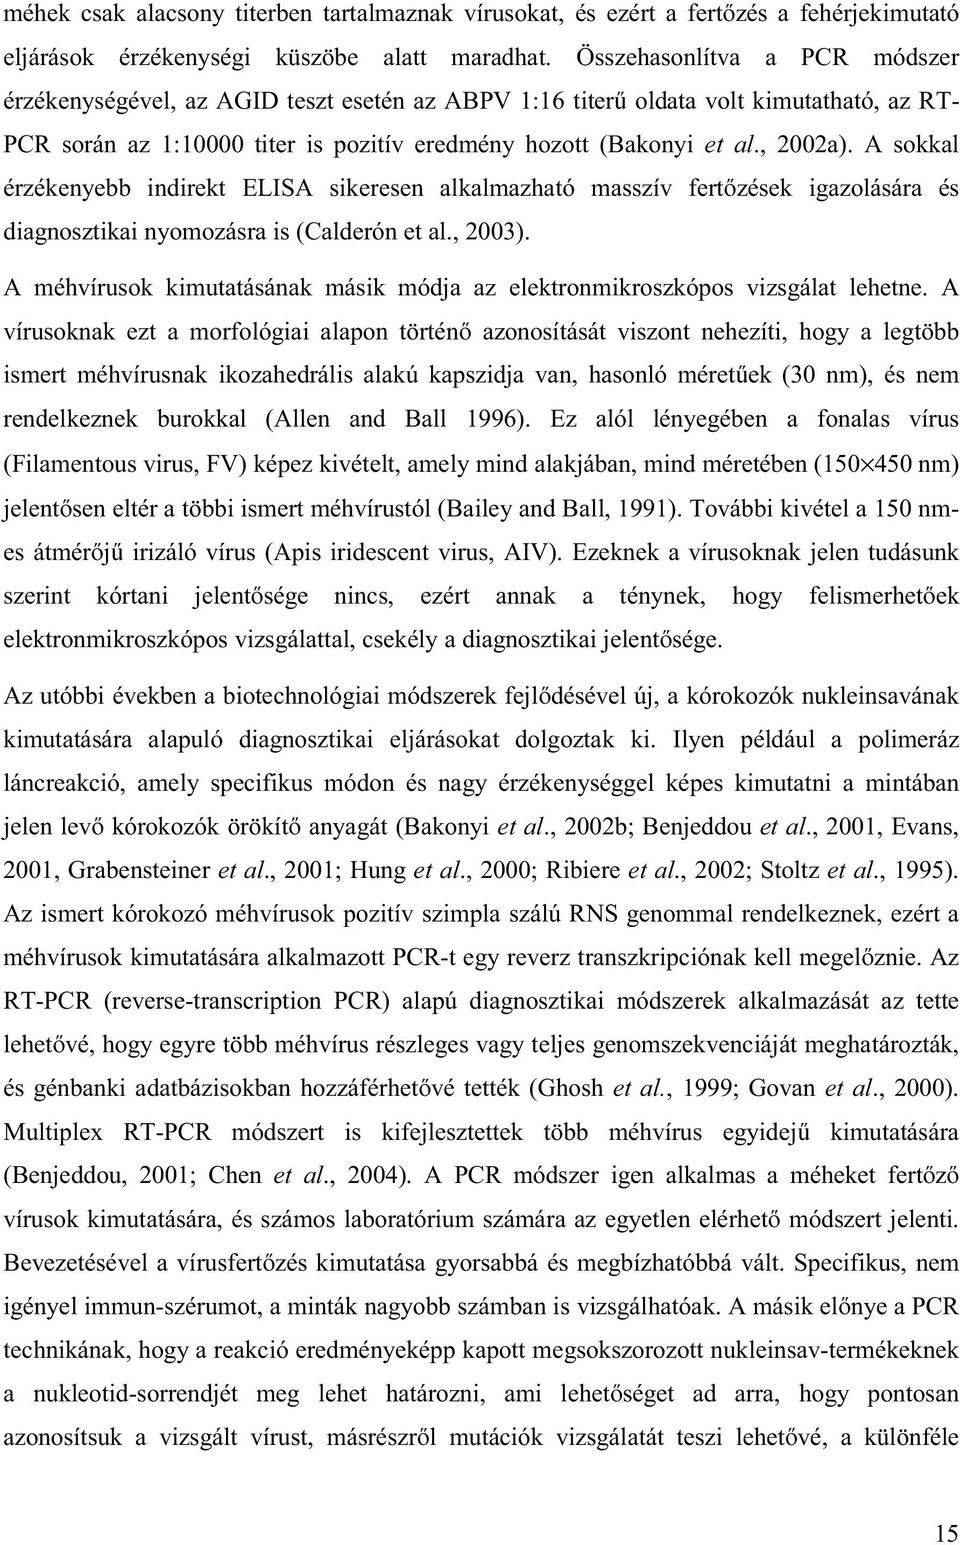 A sokkal érzékenyebb indirekt ELISA sikeresen alkalmazható masszív fertőzések igazolására és diagnosztikai nyomozásra is (Calderón et al., 2003).